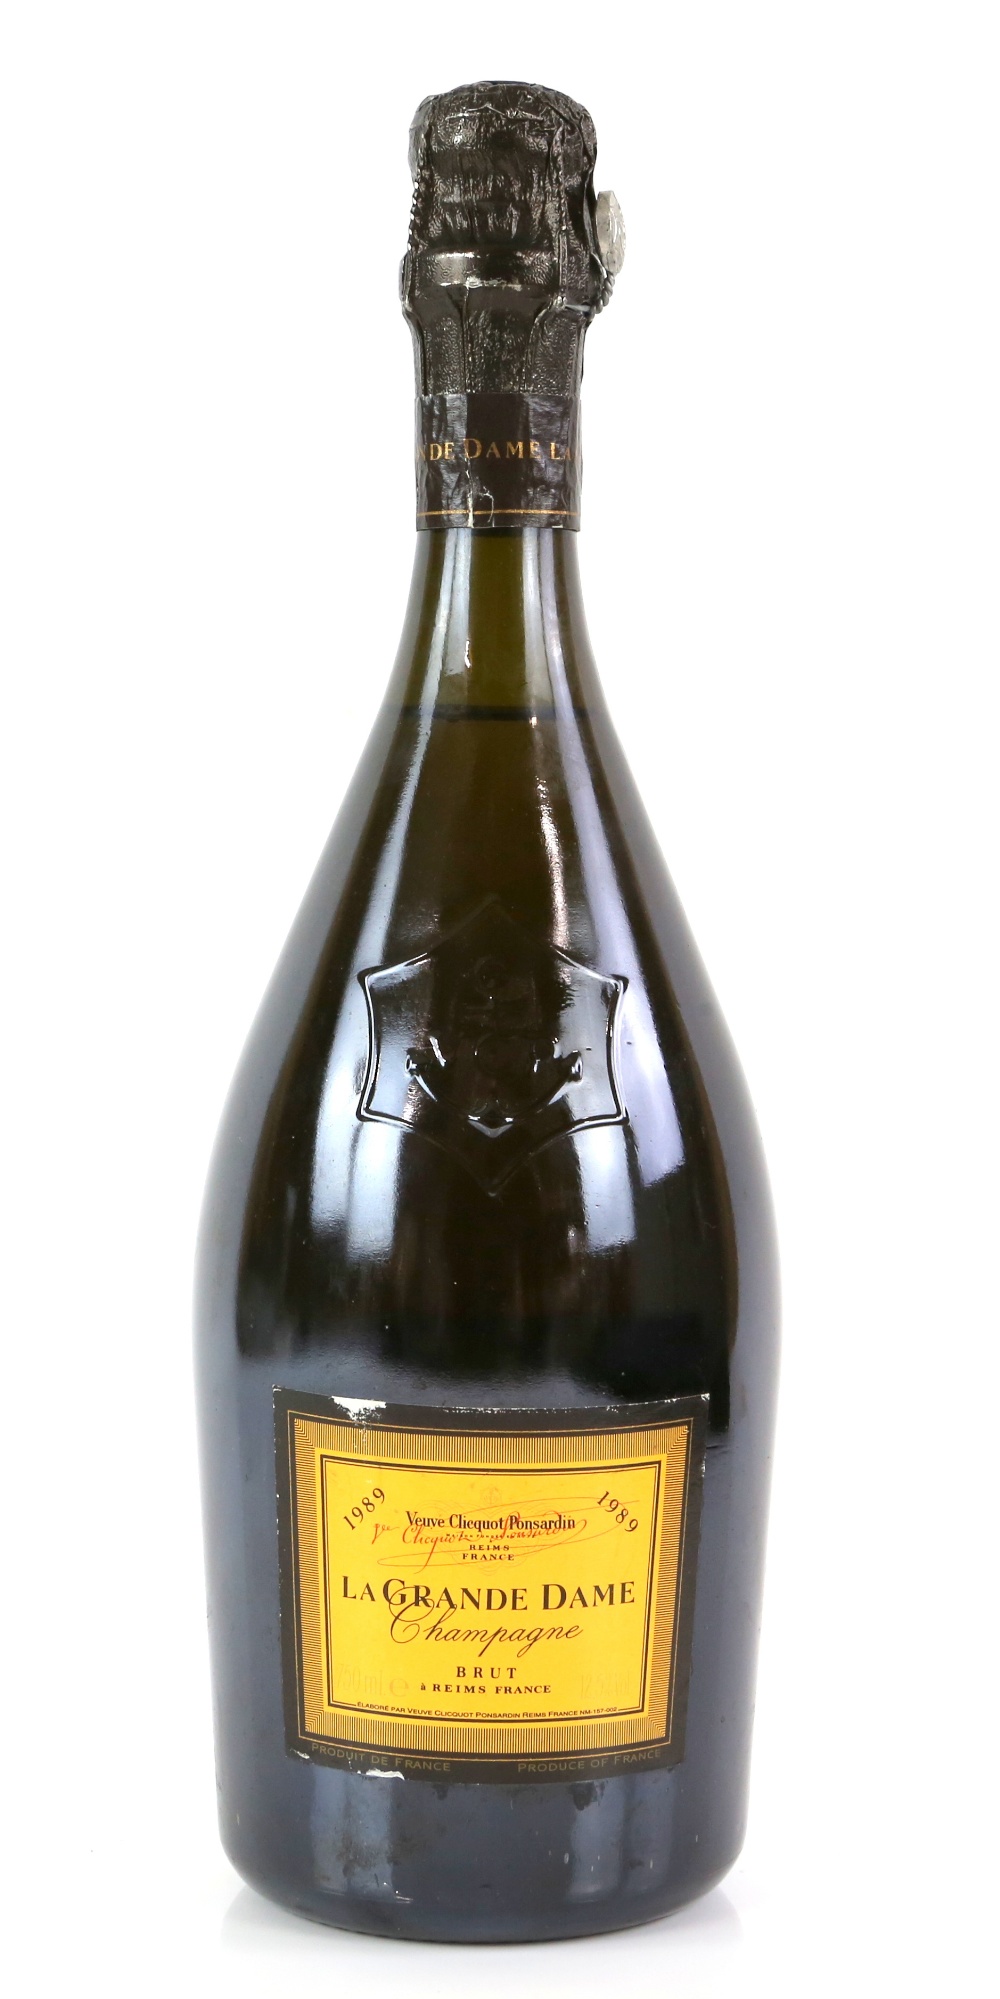 One bottle of 1989 Veuve Clicquot La Grande Dame Champagne, 750ml.